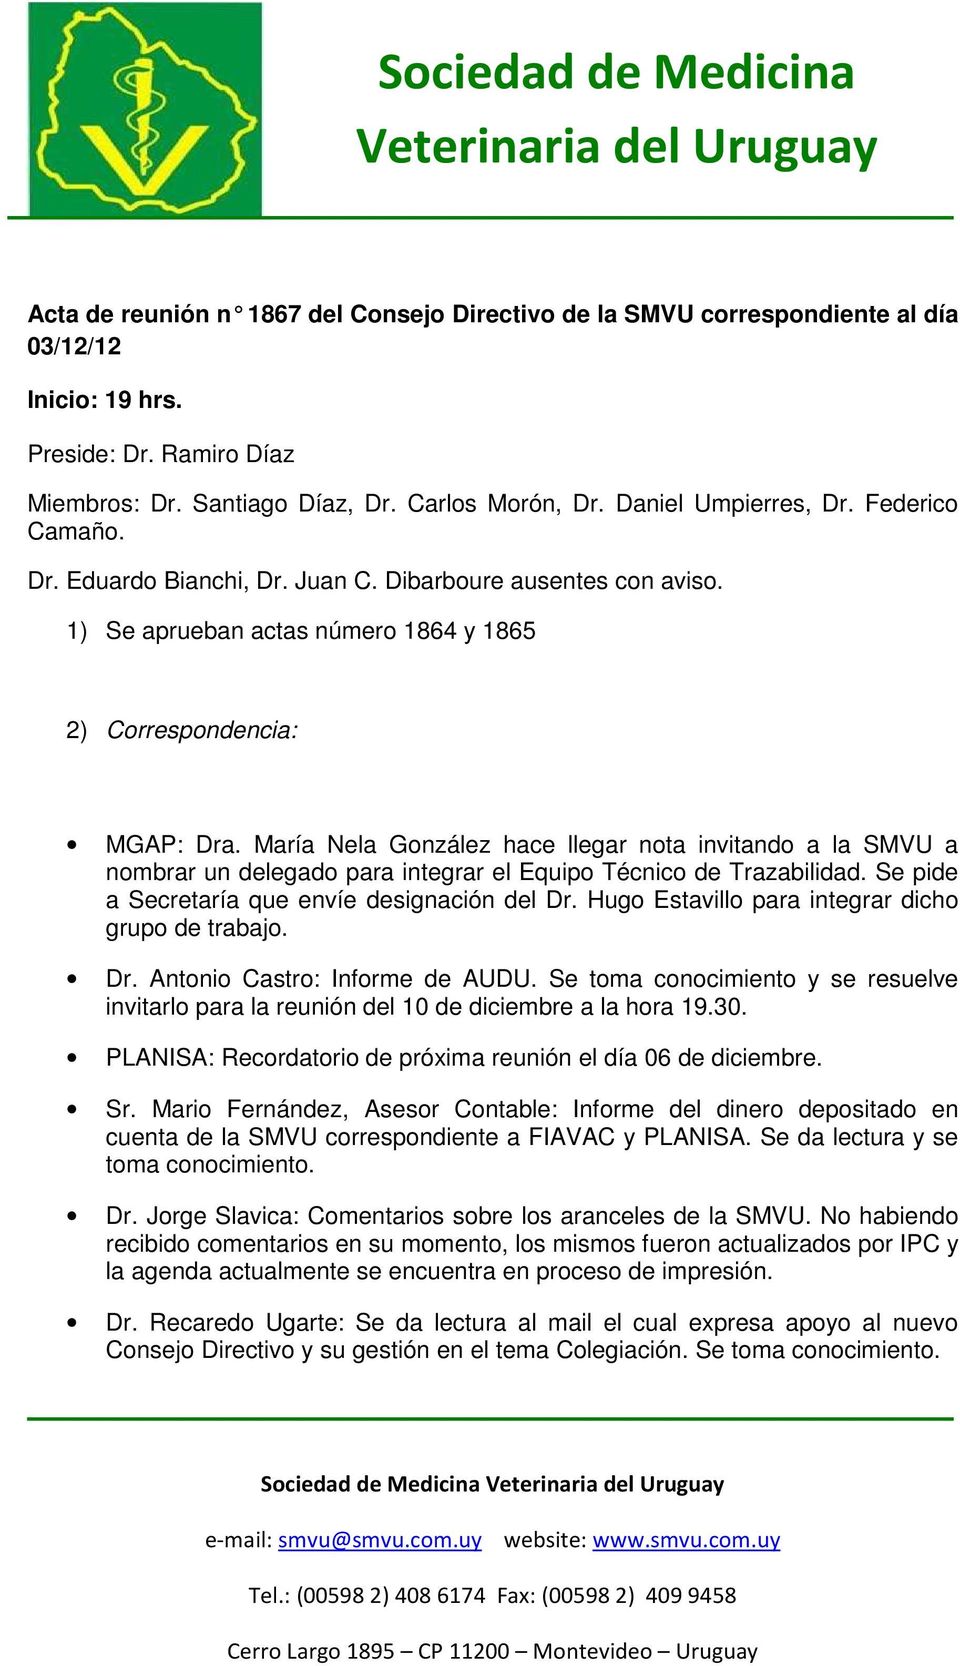 María Nela González hace llegar nota invitando a la SMVU a nombrar un delegado para integrar el Equipo Técnico de Trazabilidad. Se pide a Secretaría que envíe designación del Dr.